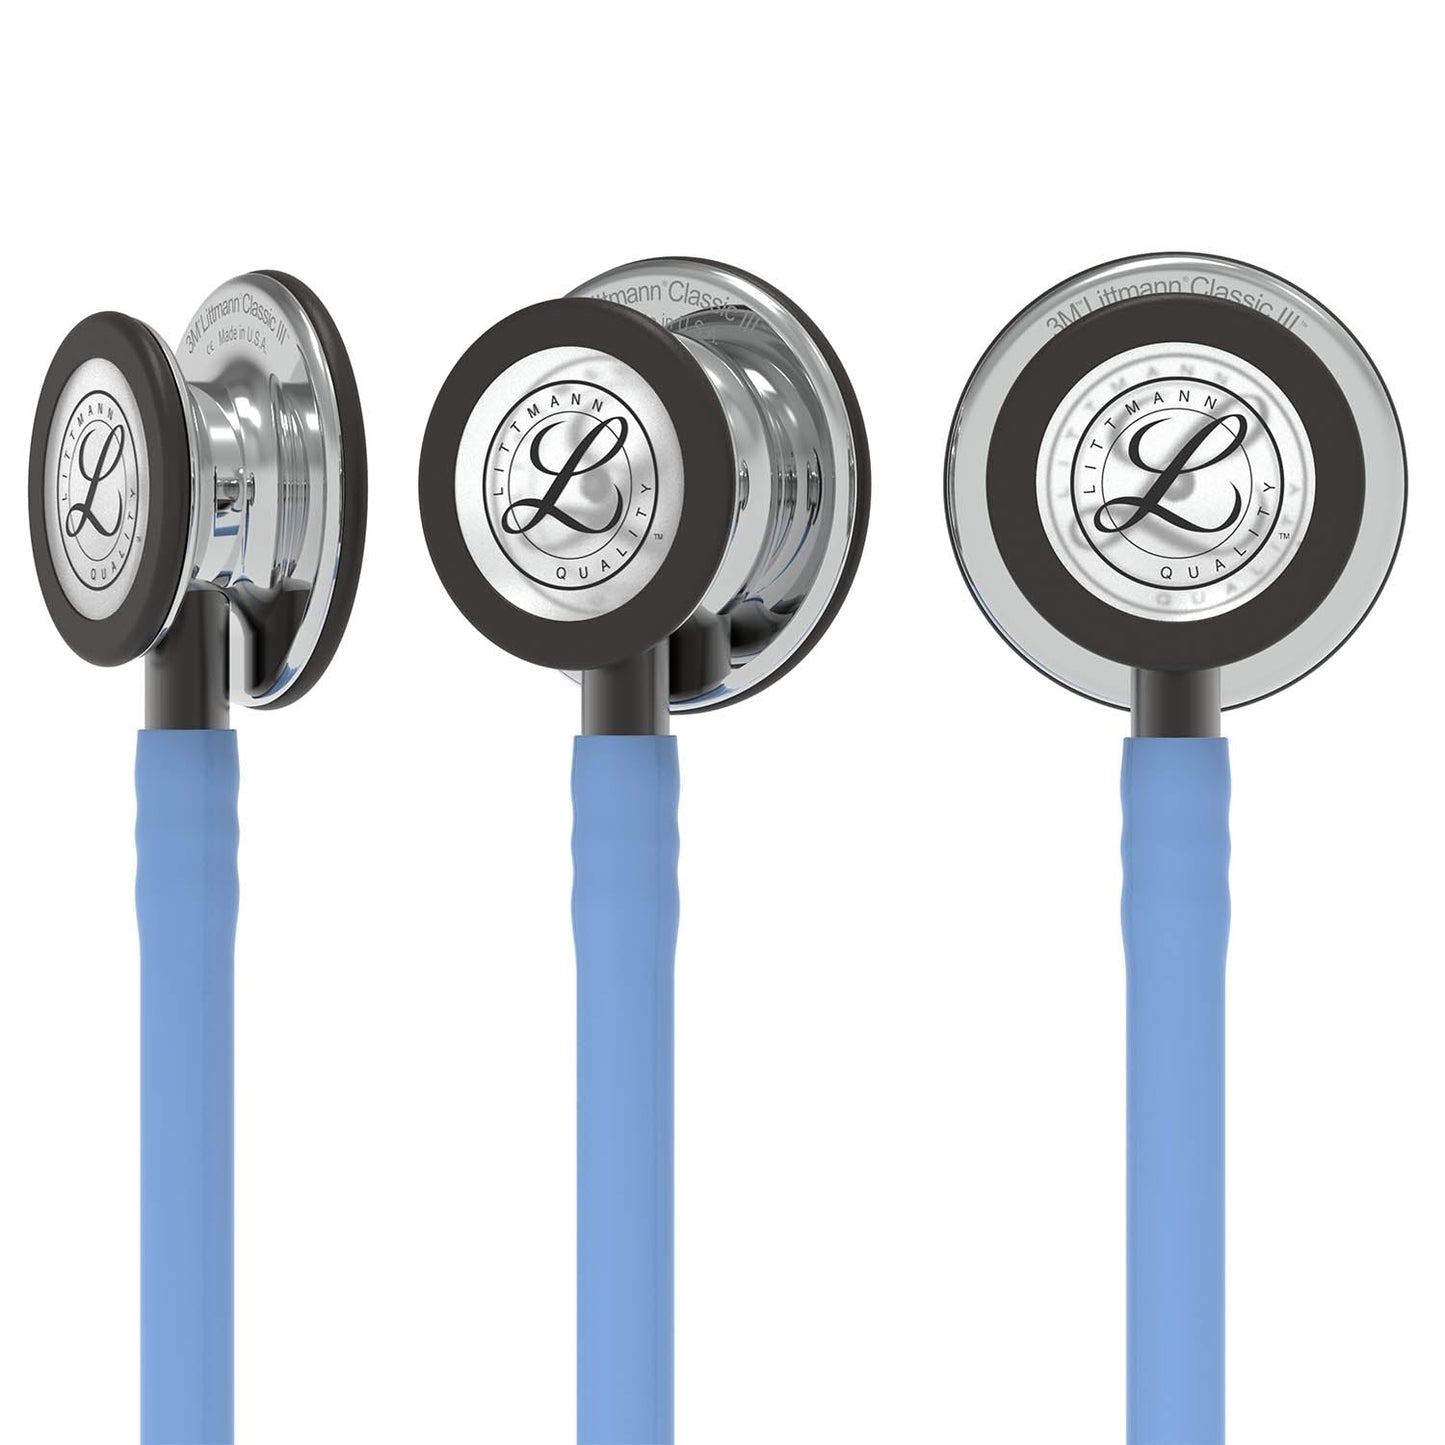 3M™ Littmann® Classic III™ -stetoskooppi, tarkkailuun, peilipintainen rintakappale, taivaansininen letkusto, savunvärinen suppilo ja savunväriset kuuntelukaaret, 27 tuumaa, 5959